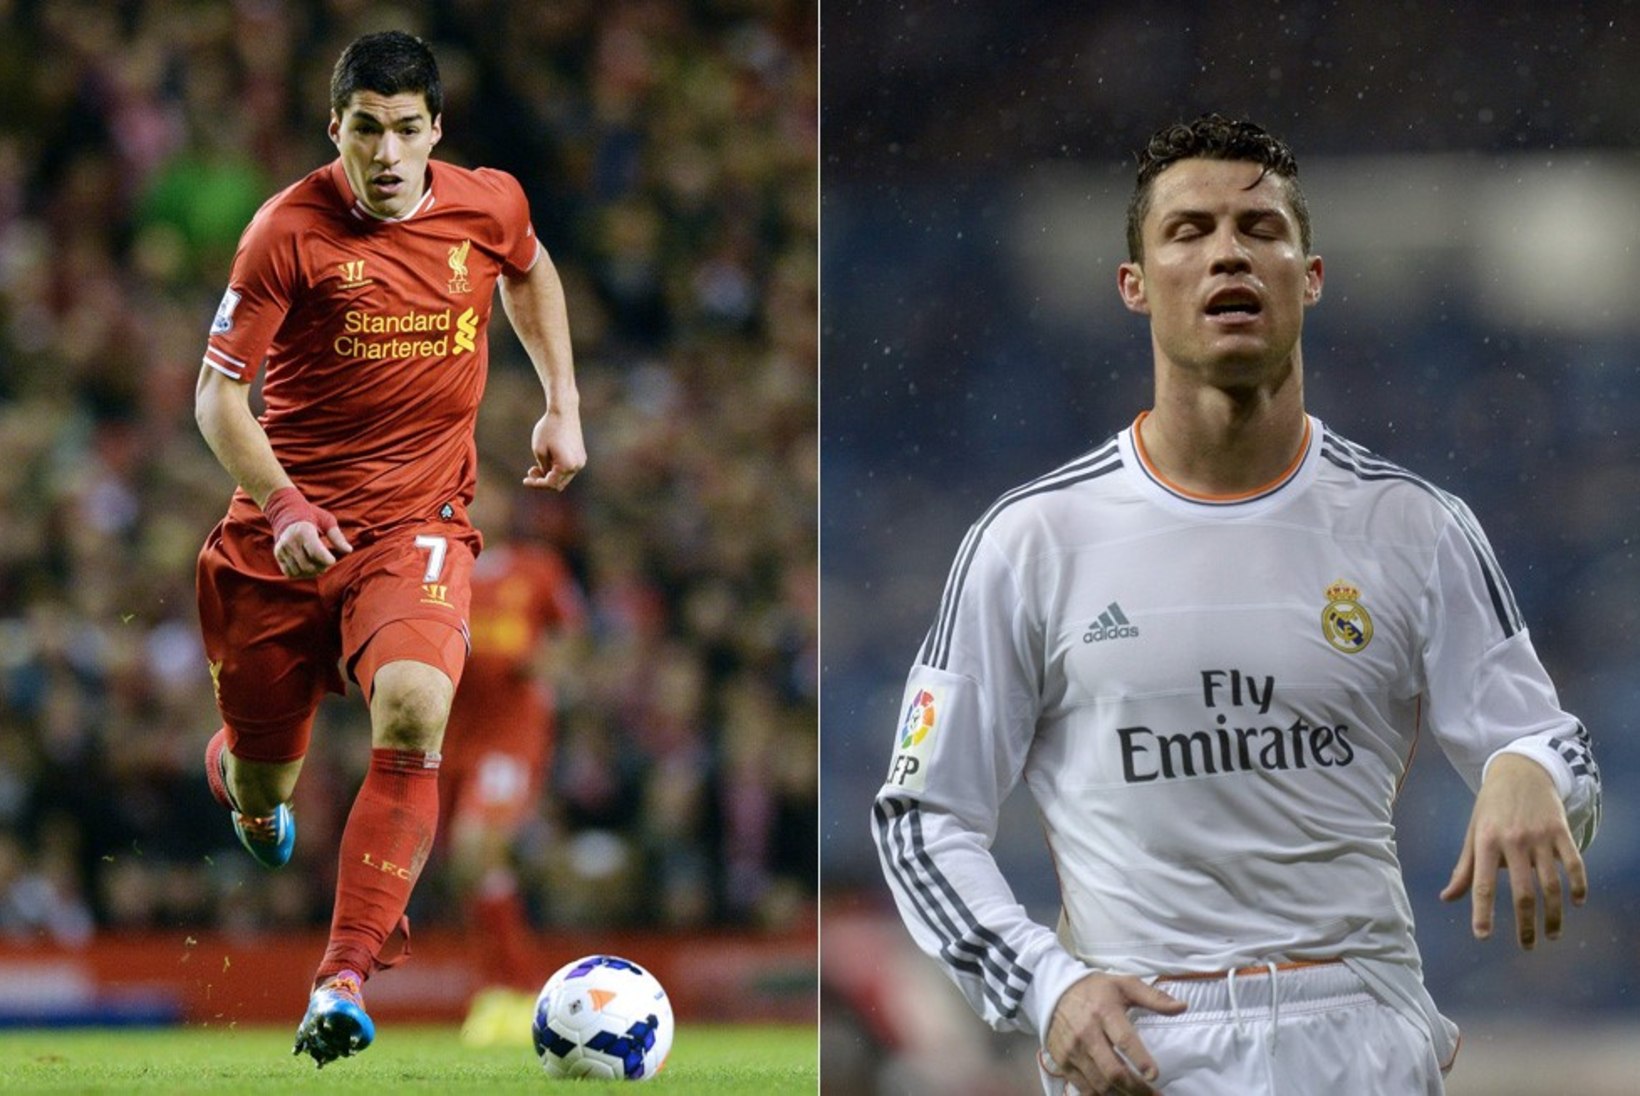 Kes on parem – Luis Suarez või Cristiano Ronaldo? Mida ütlevad numbrid?